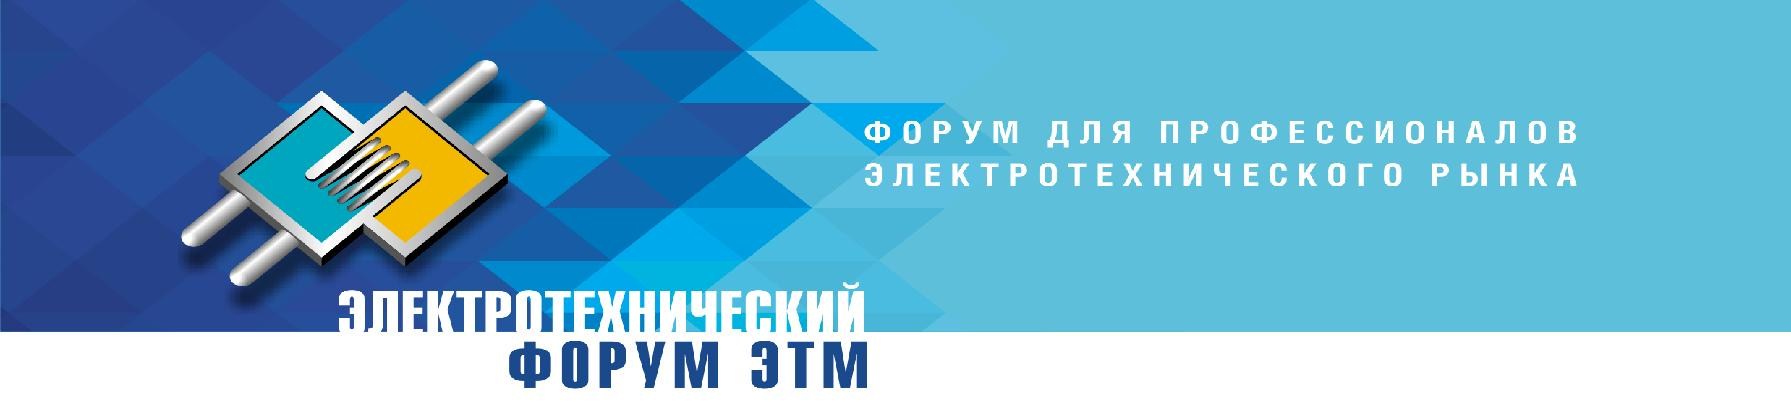 Электротехнический Форум ЭТМ в г.Казани